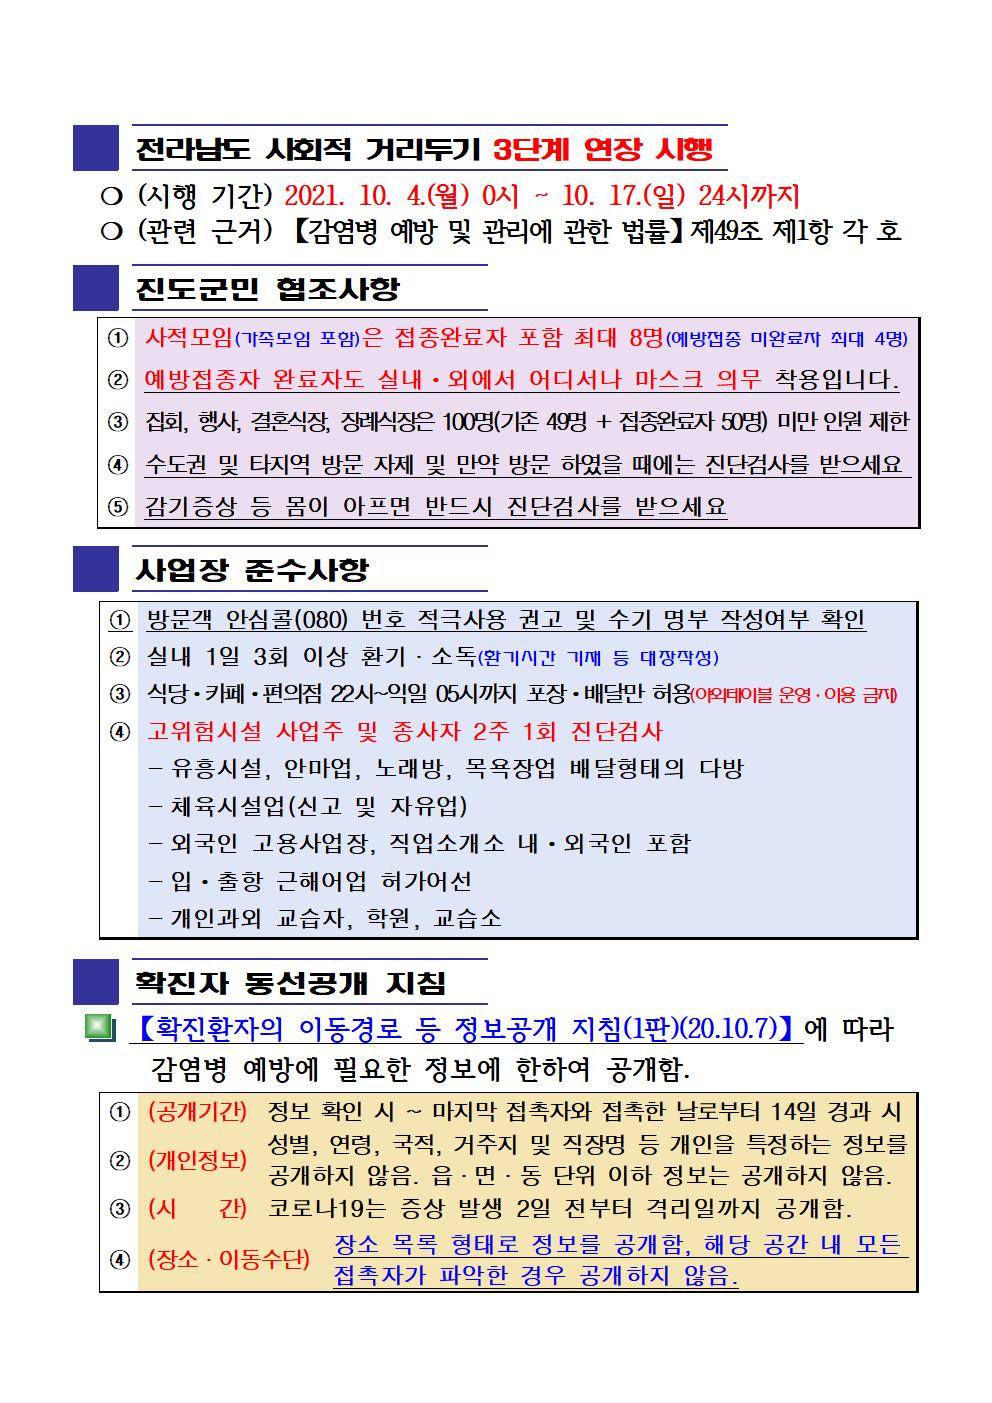 2021년 코로나19 대응 일일상황보고(10월 7일 24시 기준) 첨부#2